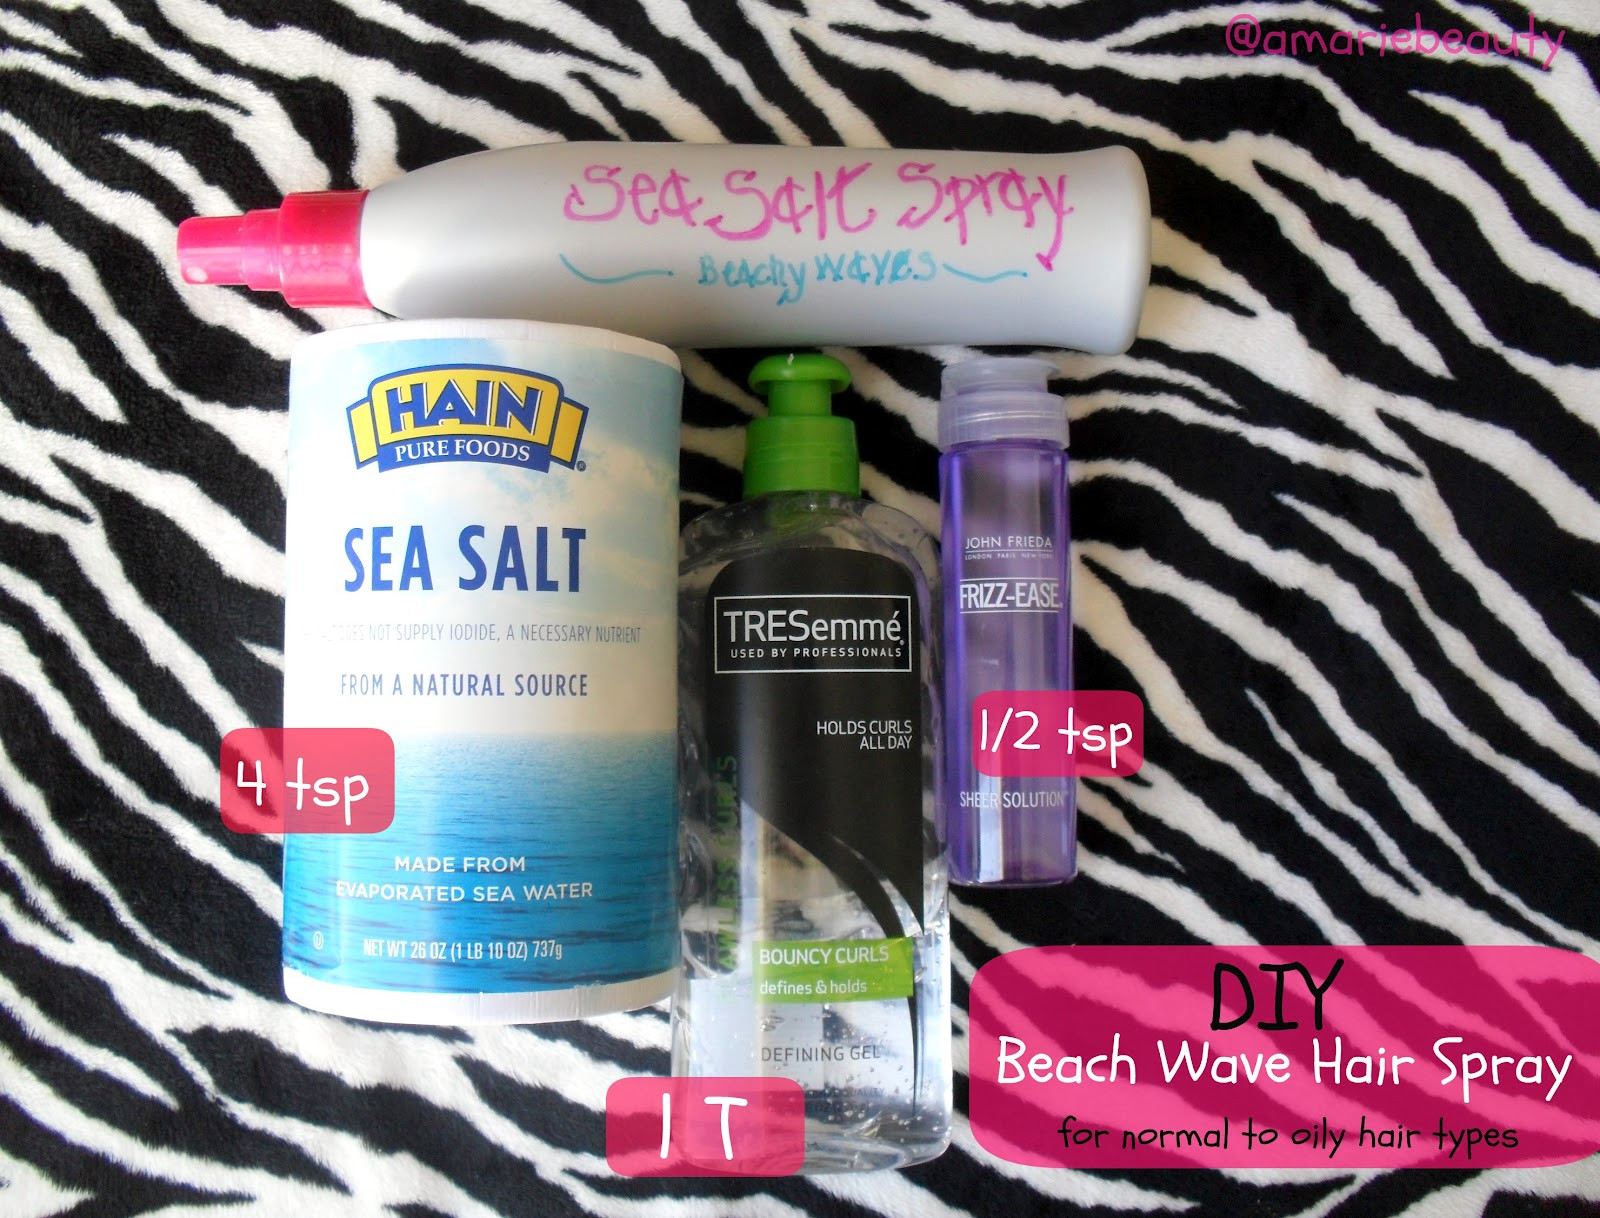 Best ideas about Sea Salt Spray DIY
. Save or Pin amariebeauty DIY Sea Salt Spray Now.